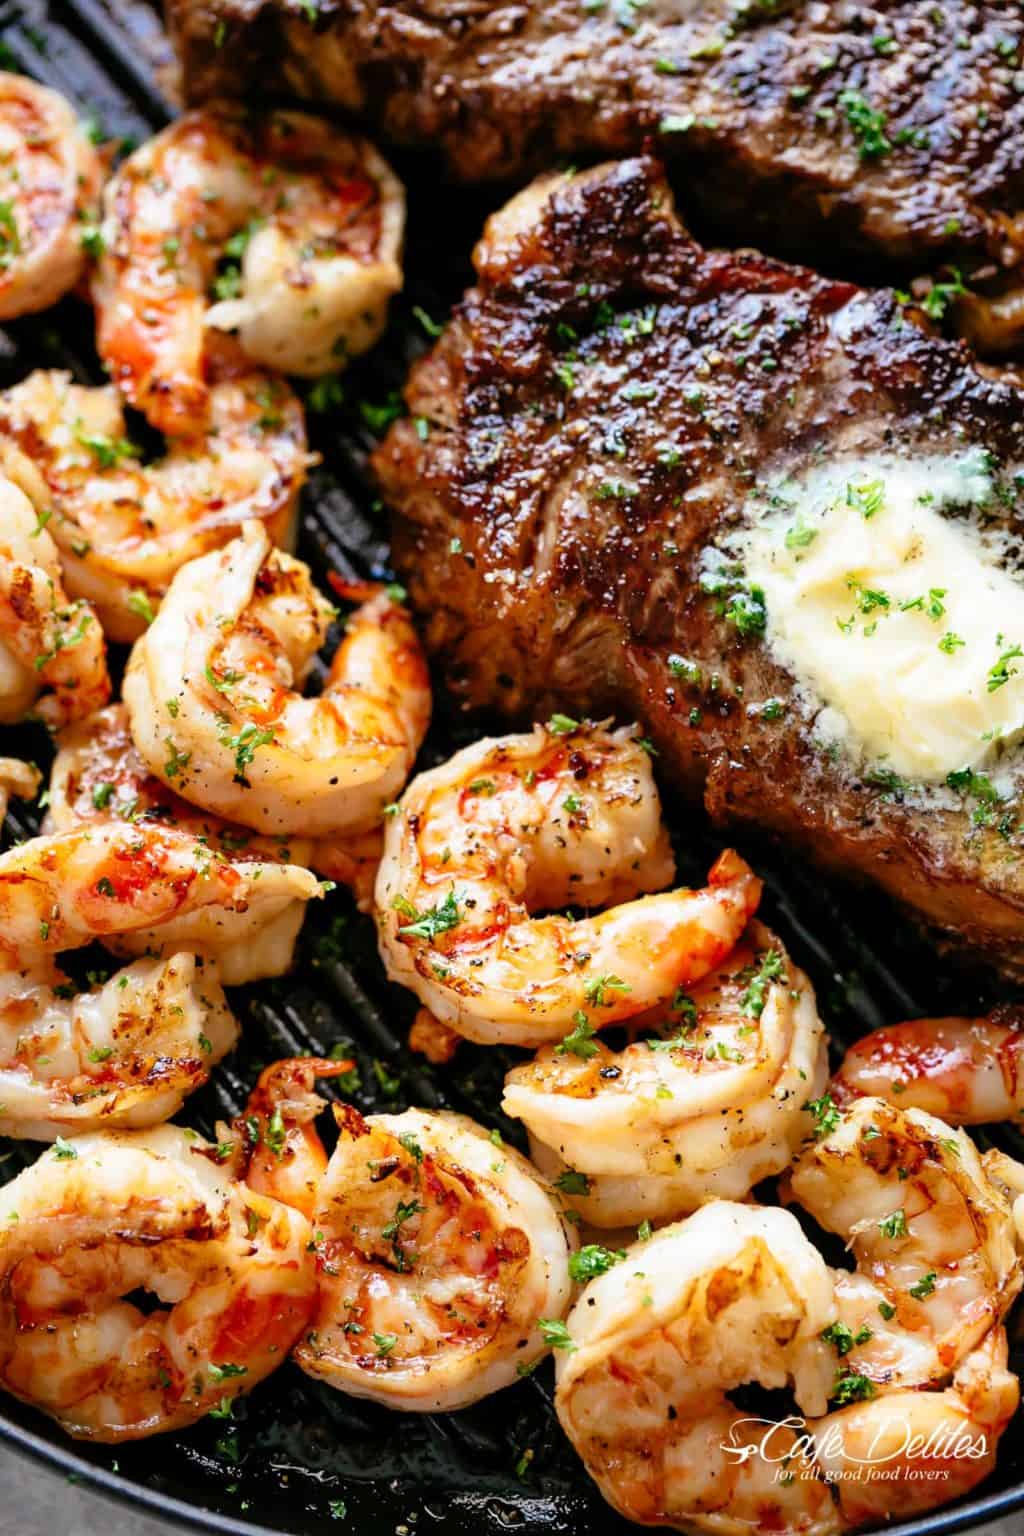 Garlic Butter Grilled Steak & Shrimp - Cafe Delites